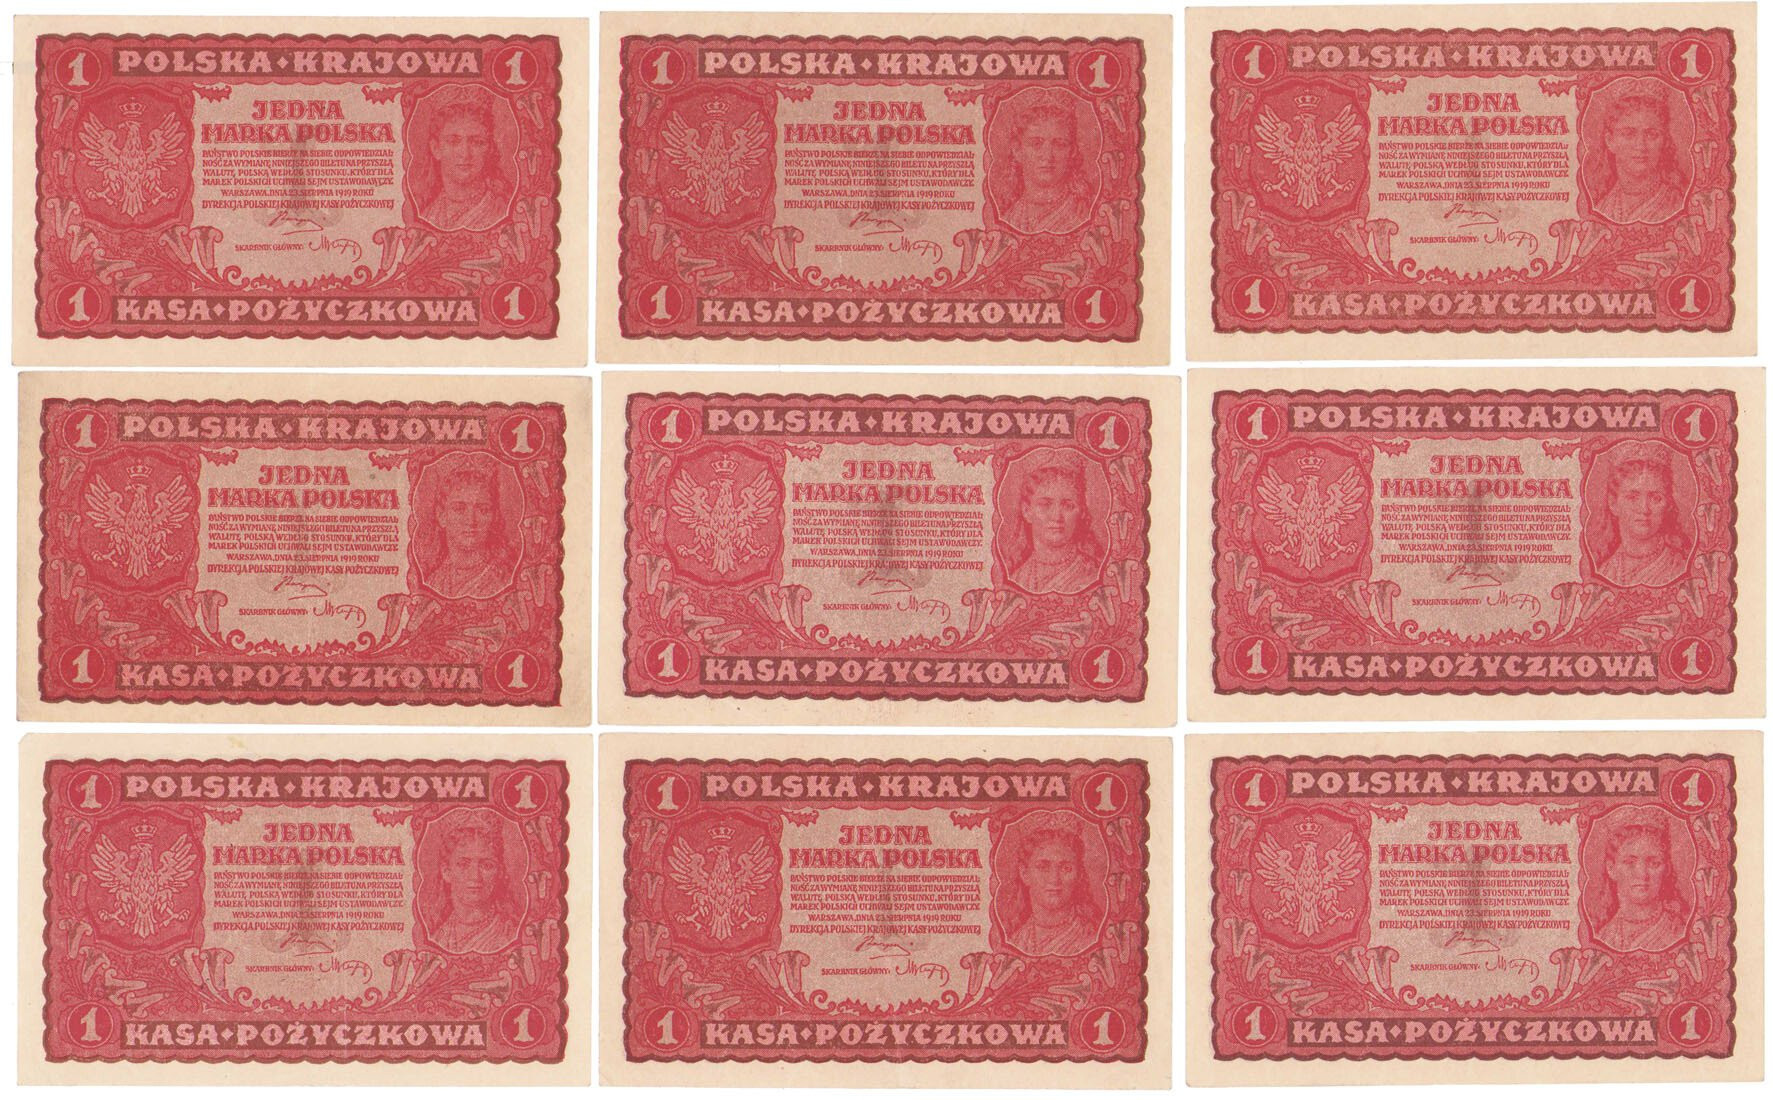 1 marka polska 1919 – zestaw 9 banknotów